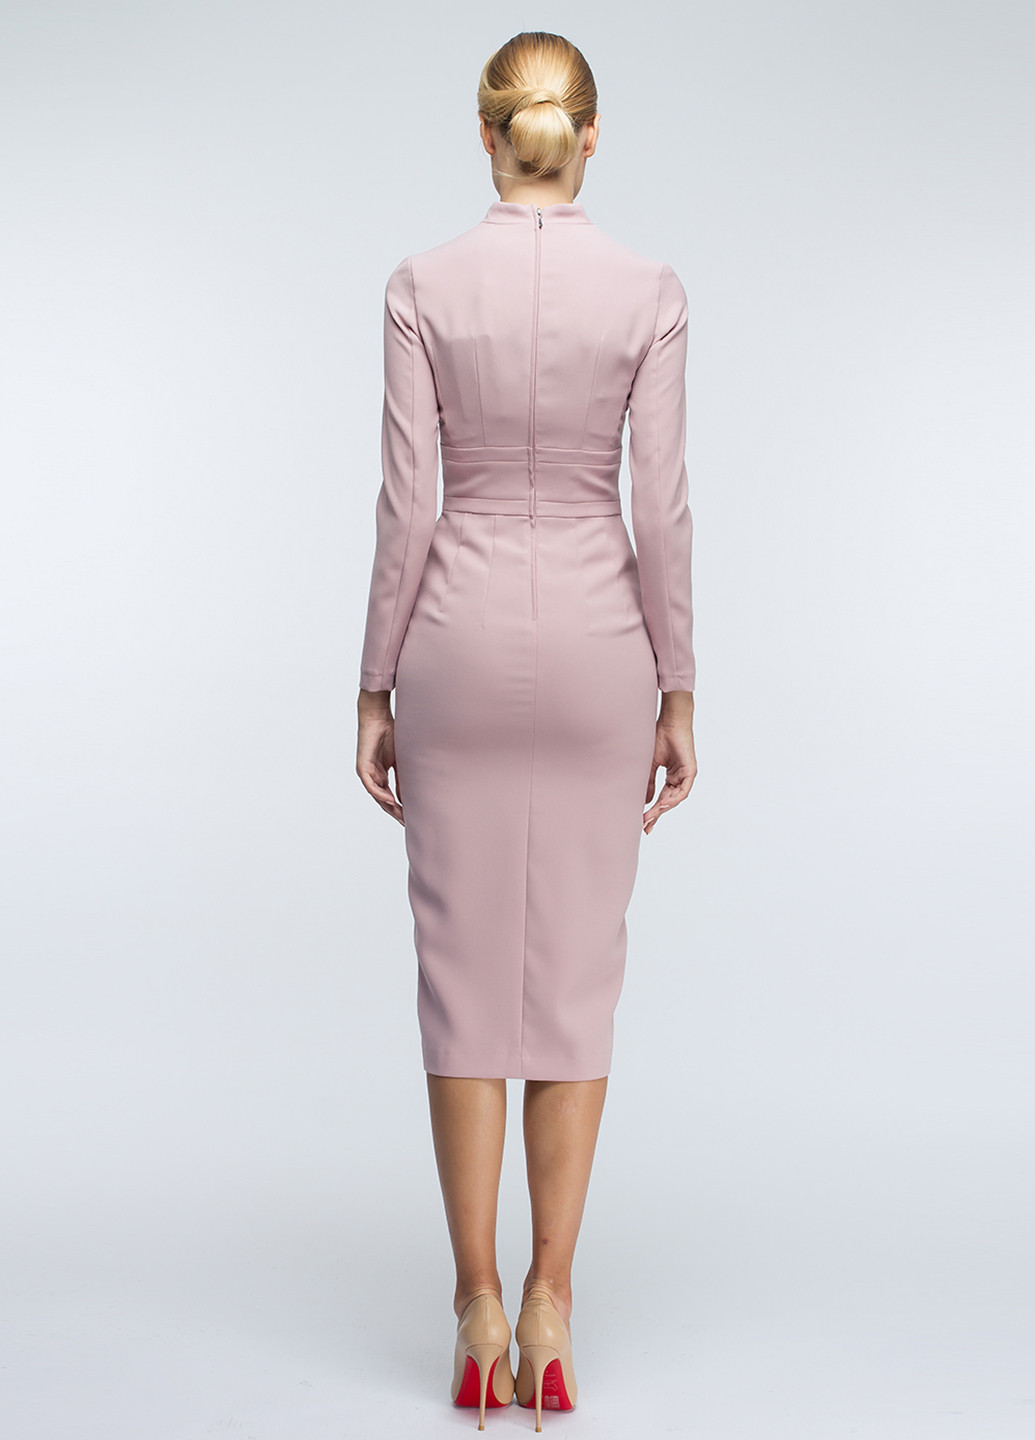 Светло-розовое деловое платье футляр BGL однотонное